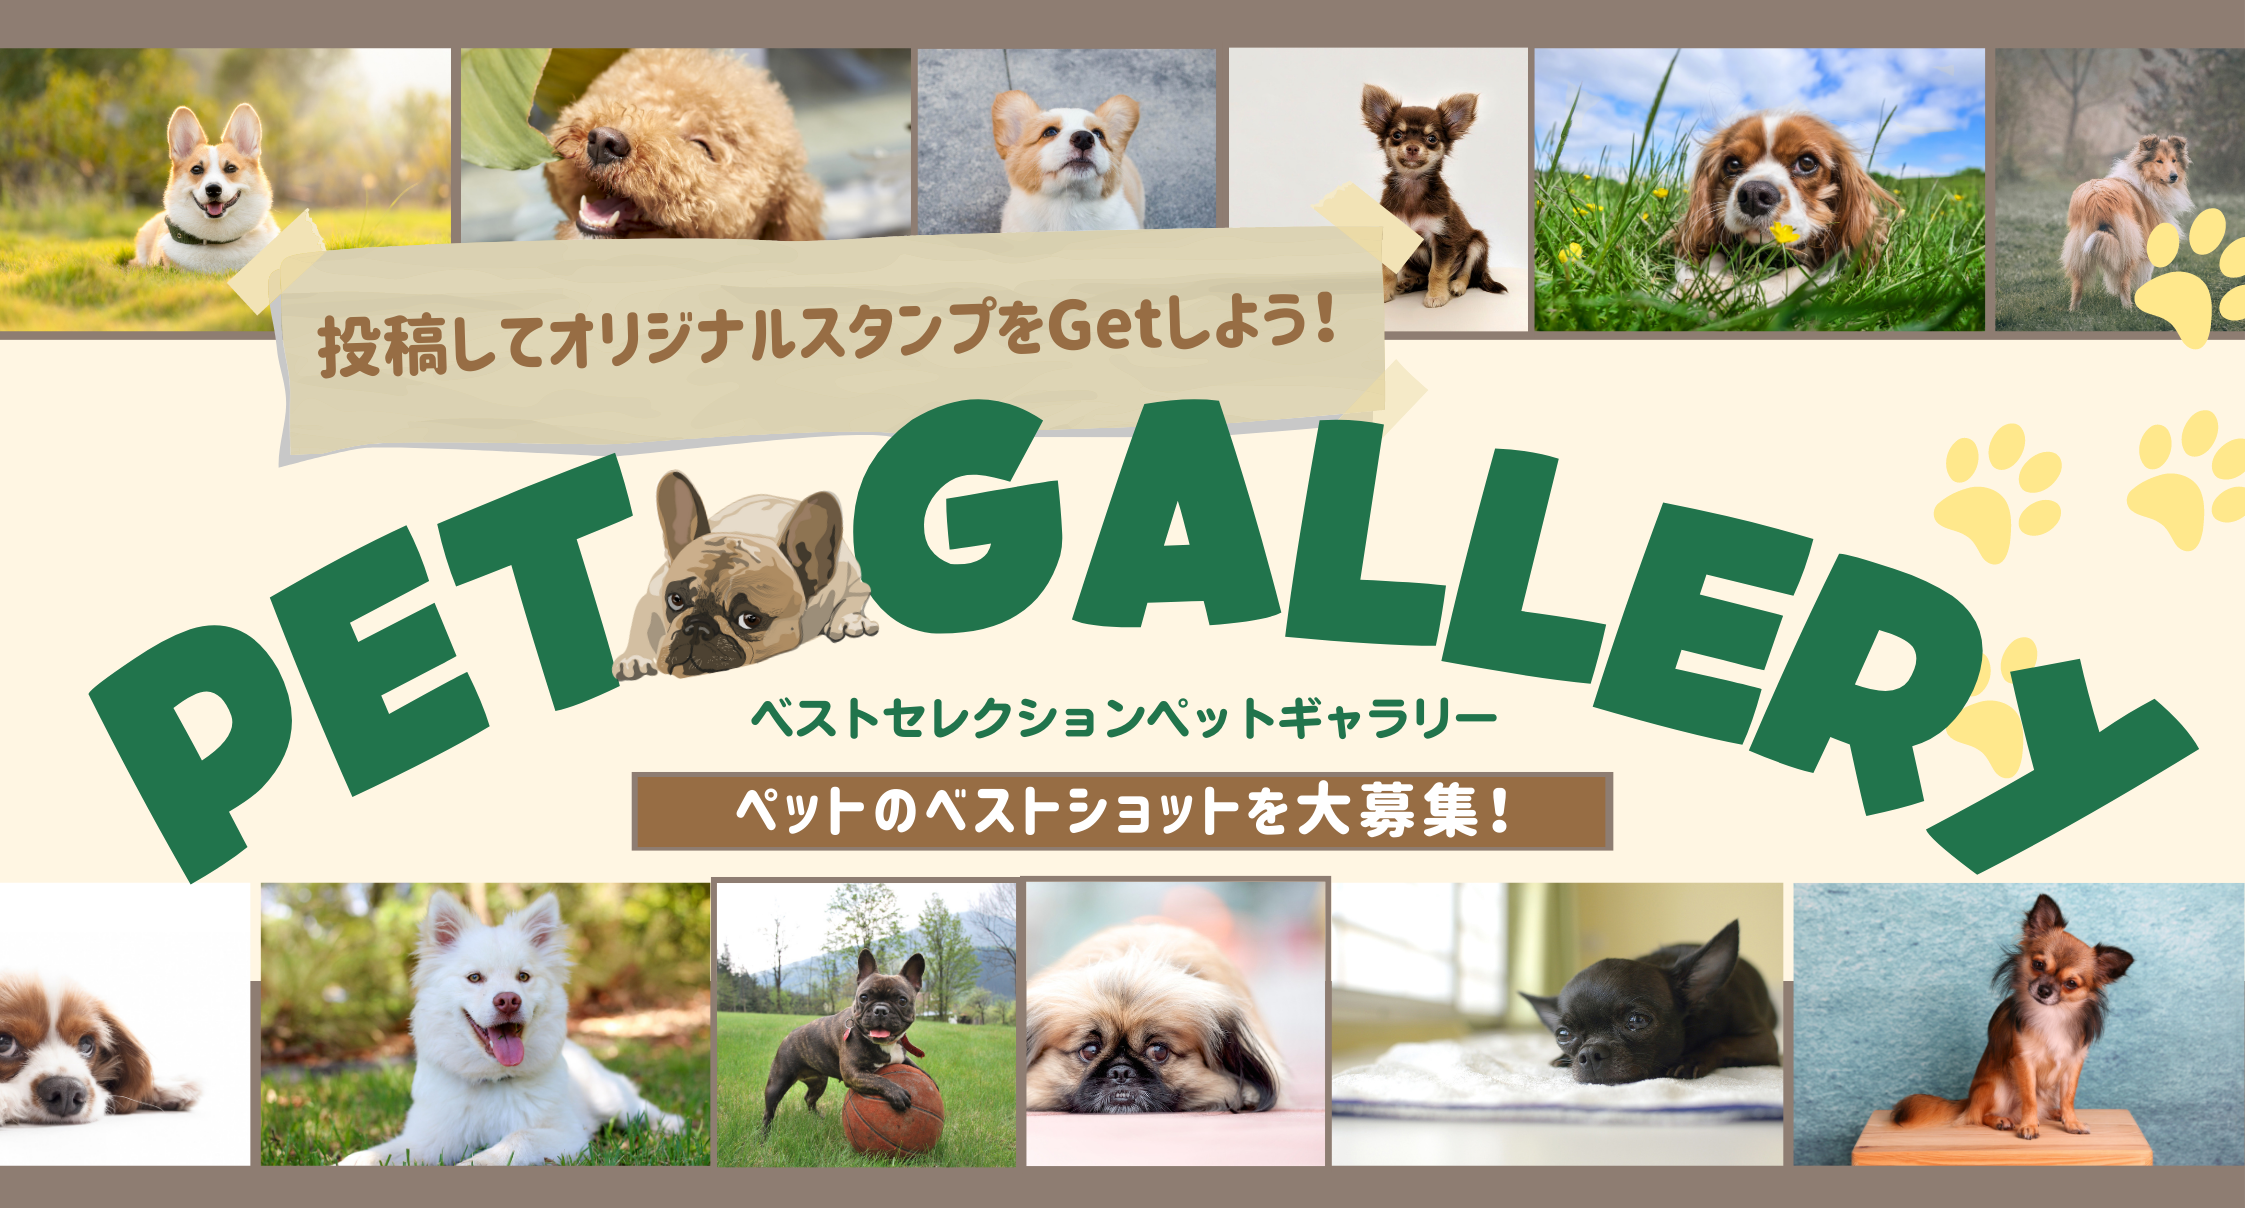 Pet Gallery